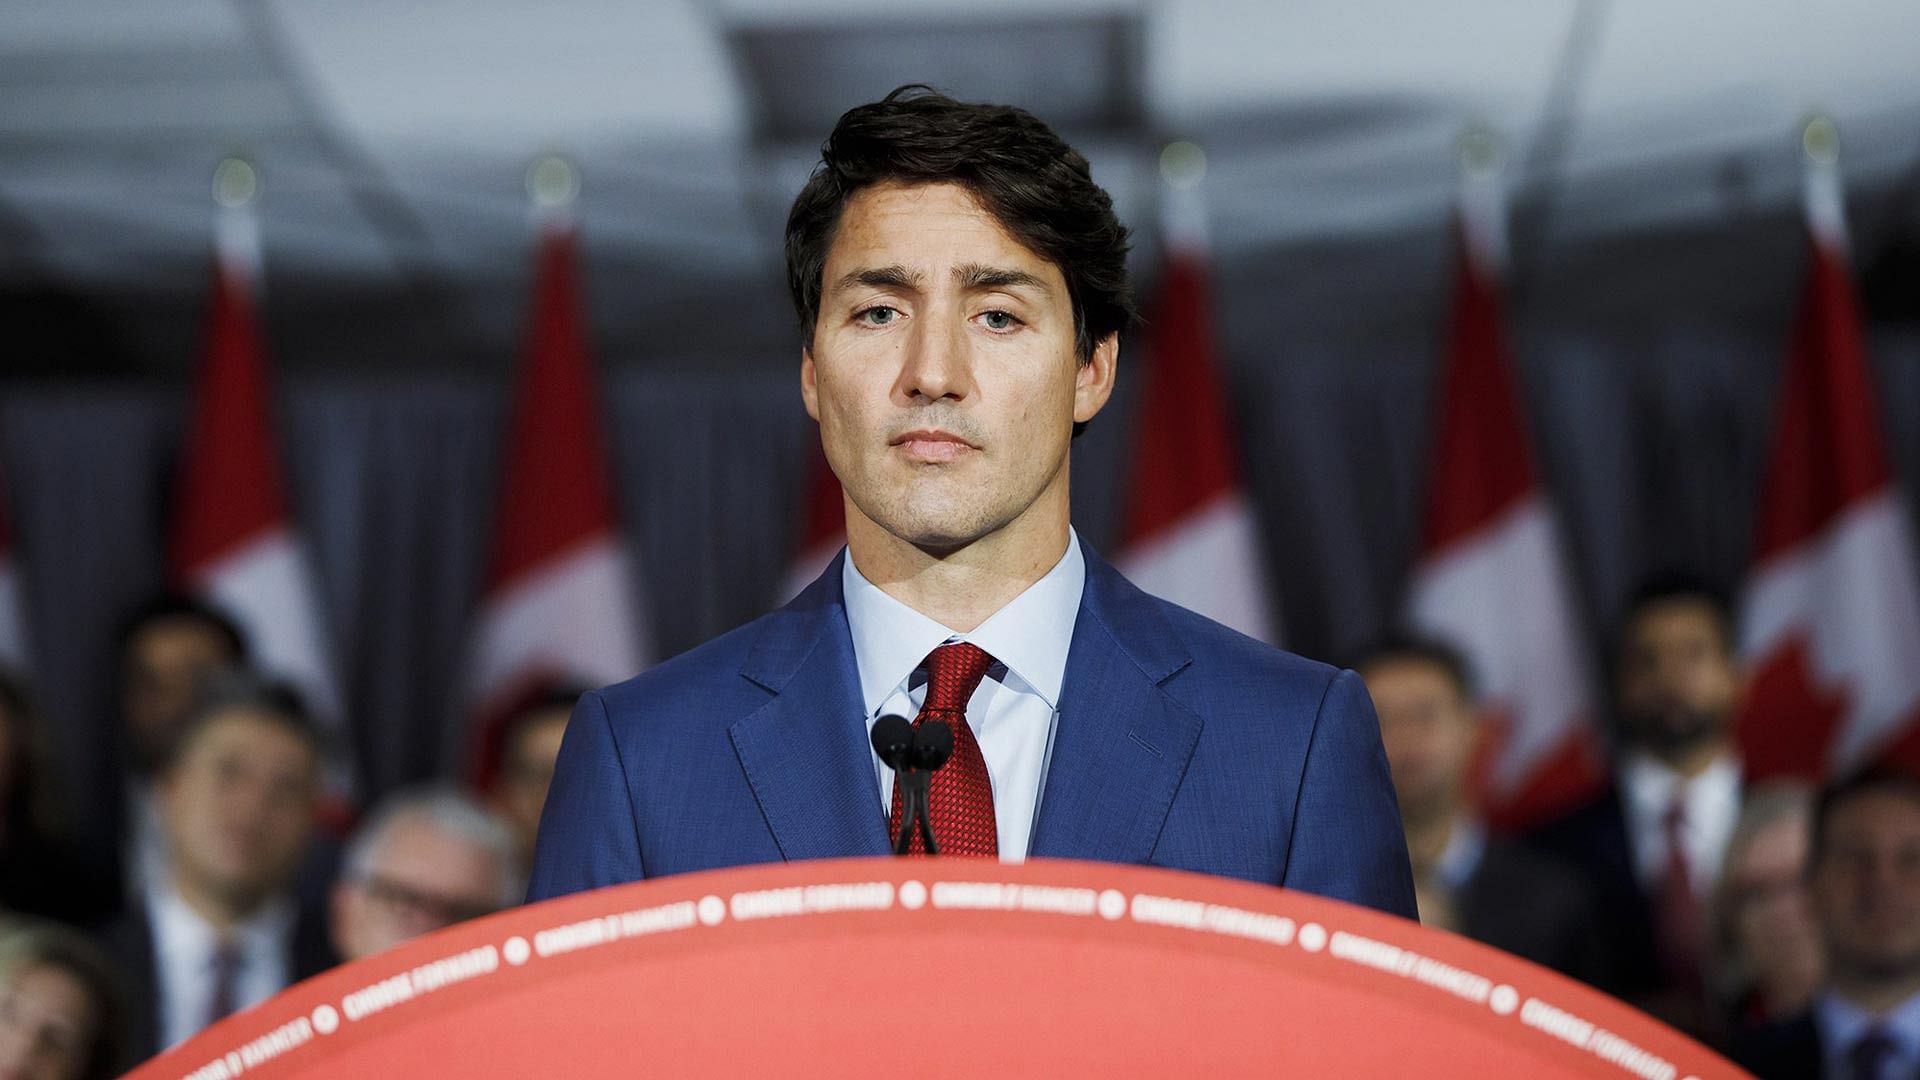 <div class="paragraphs"><p>Canadian Prime Minister Justin Trudeau.&nbsp;</p></div>